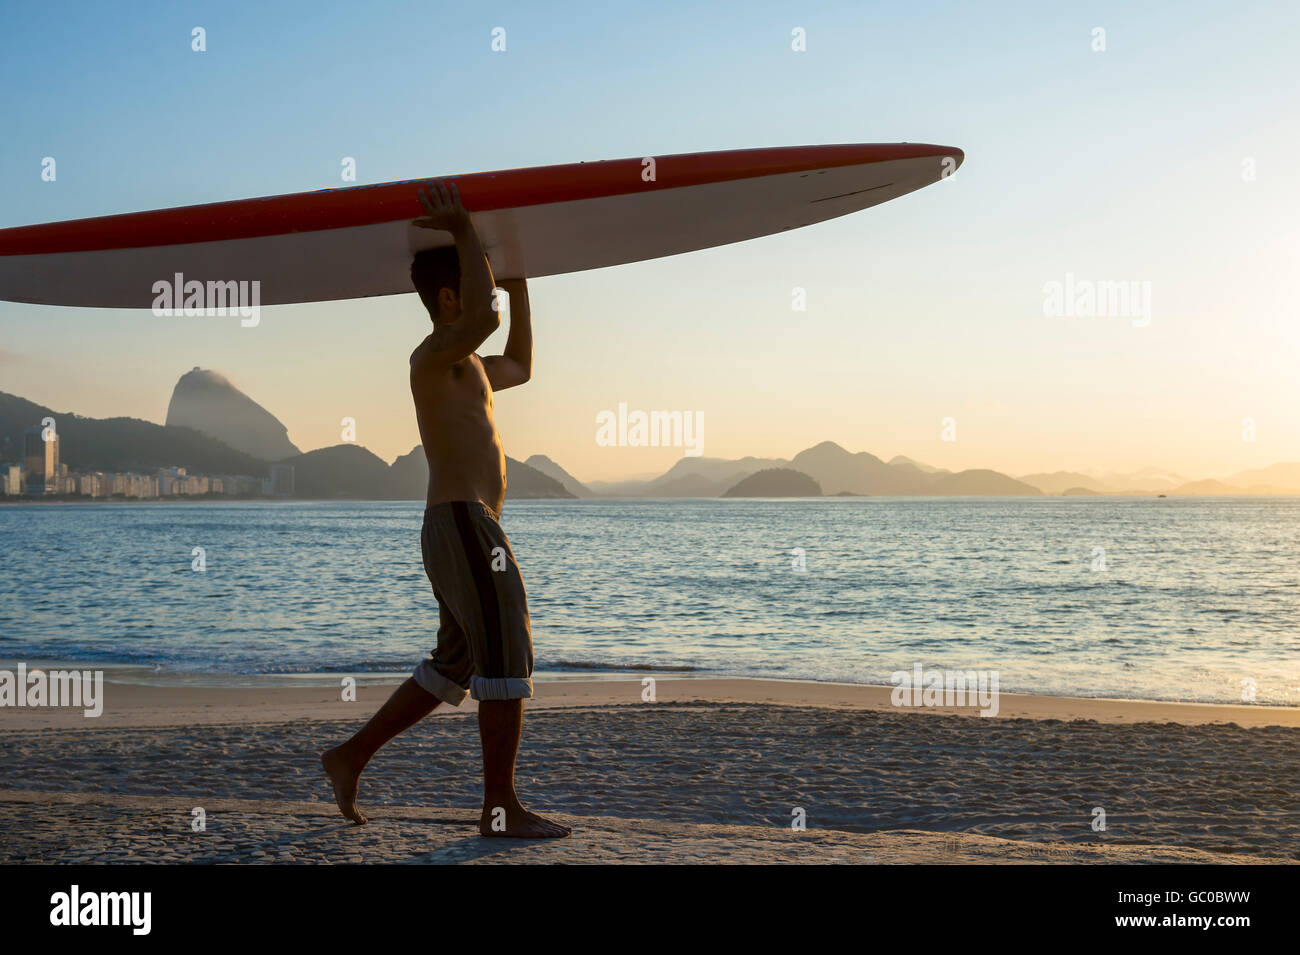 RIO DE JANEIRO - APRIL 5, 2016: A young Brazilian man on Copacabana Beach balances a surfboard on his head at sunrise. Stock Photo